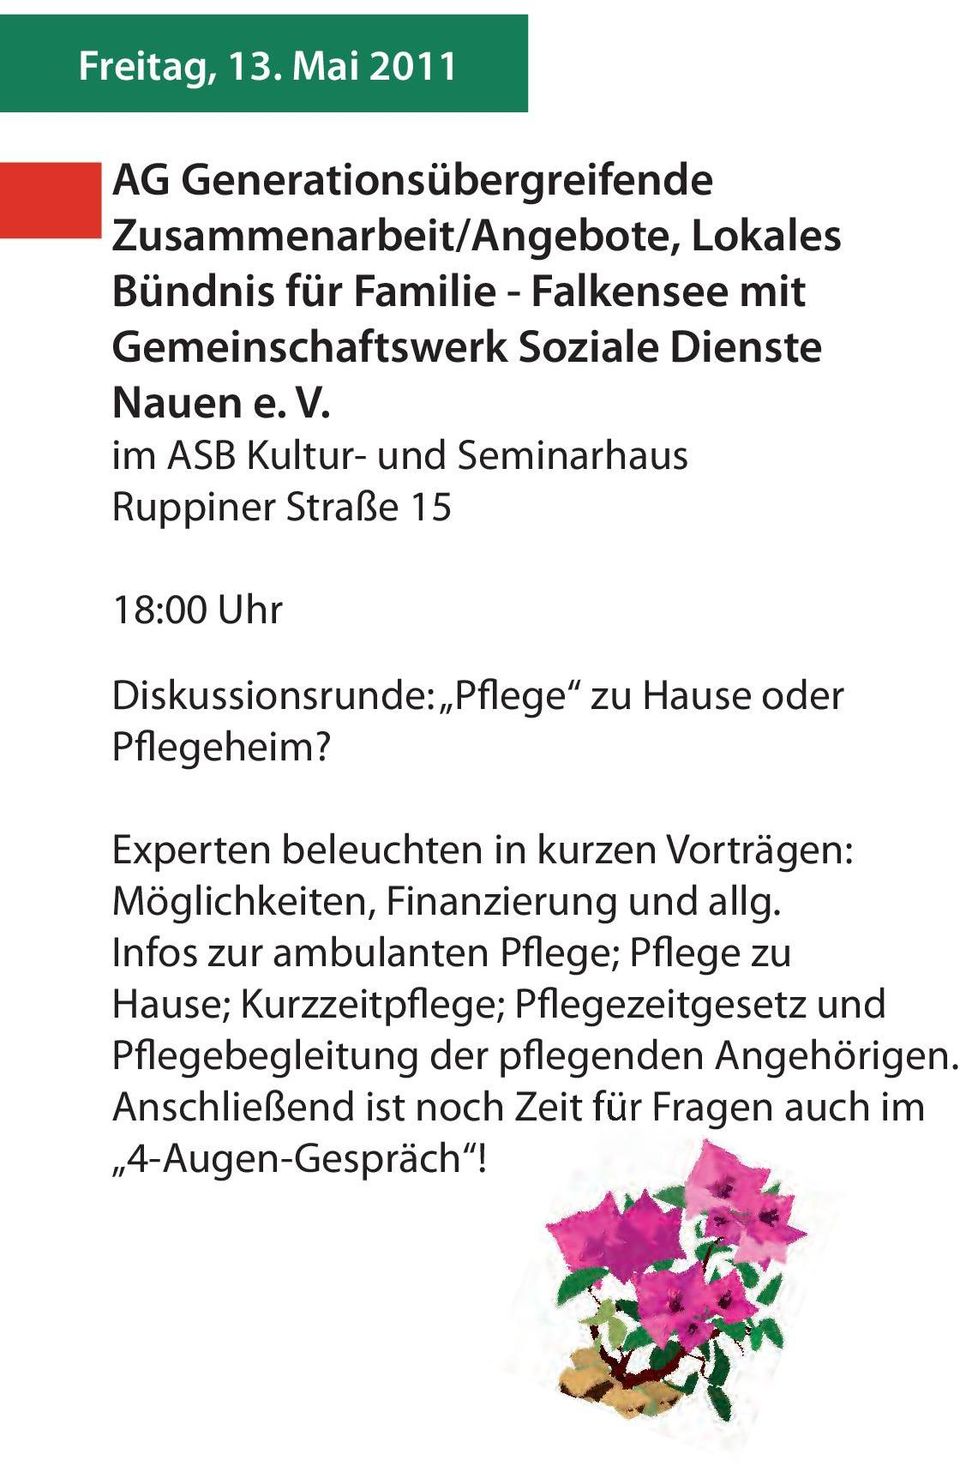 Dienste Nauen e. V. im ASB Kultur- und Seminarhaus Ruppiner Straße 15 18:00 Uhr Diskussionsrunde: Pflege zu Hause oder Pflegeheim?